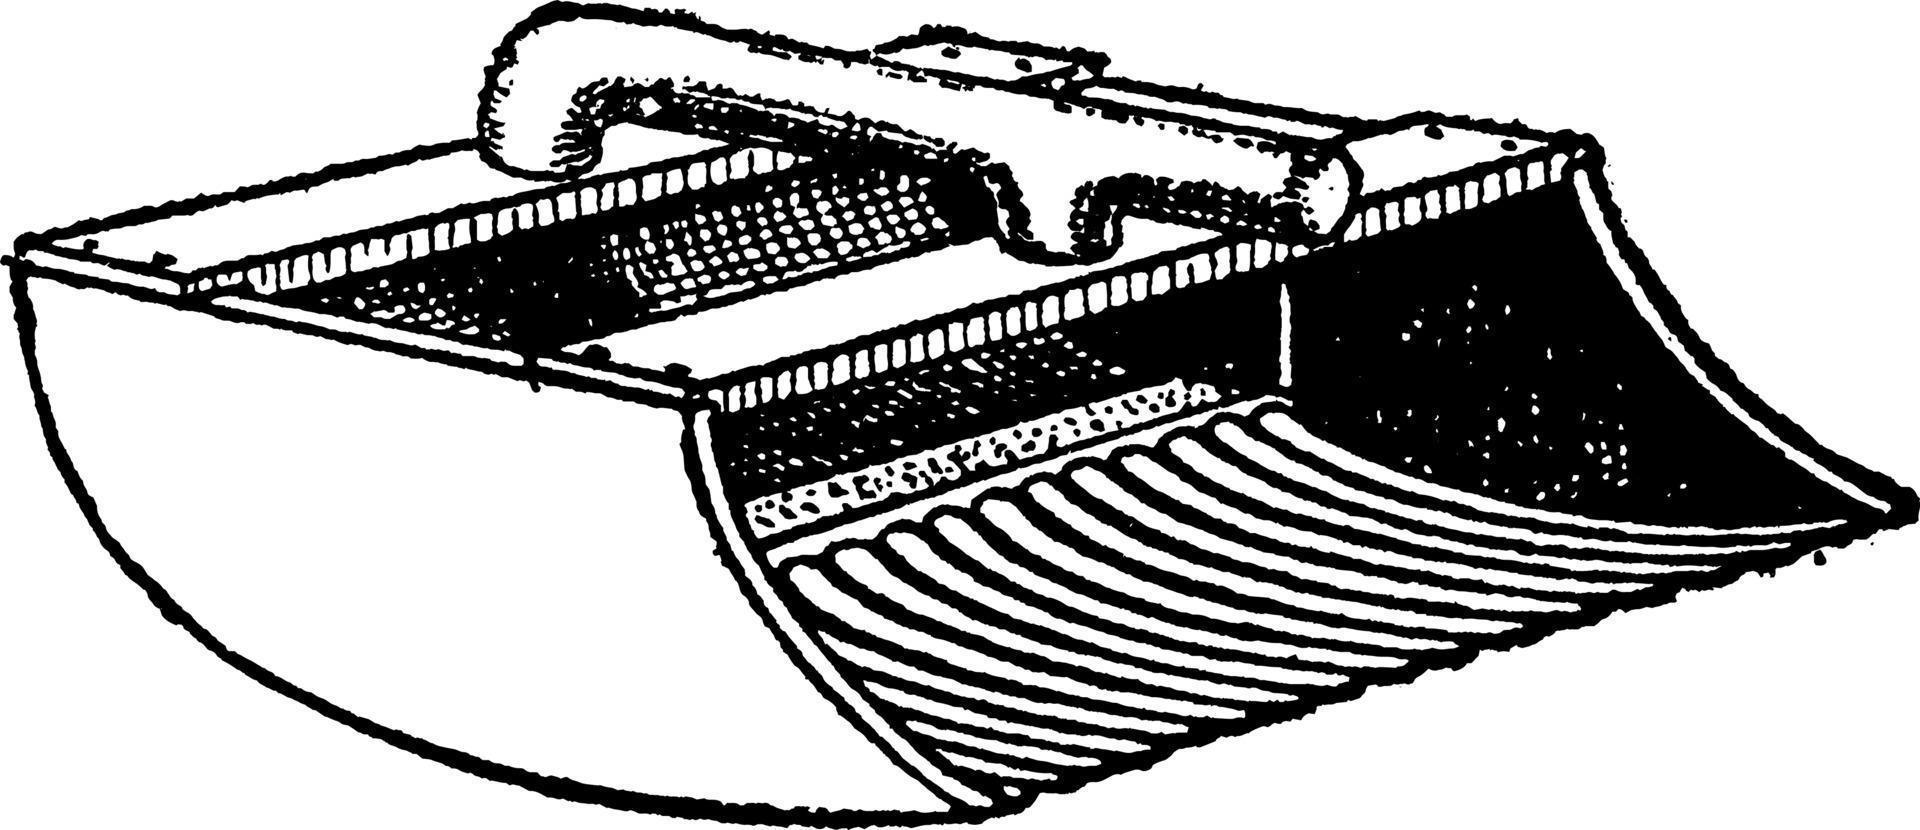 boule de canneberge, illustration vintage. vecteur